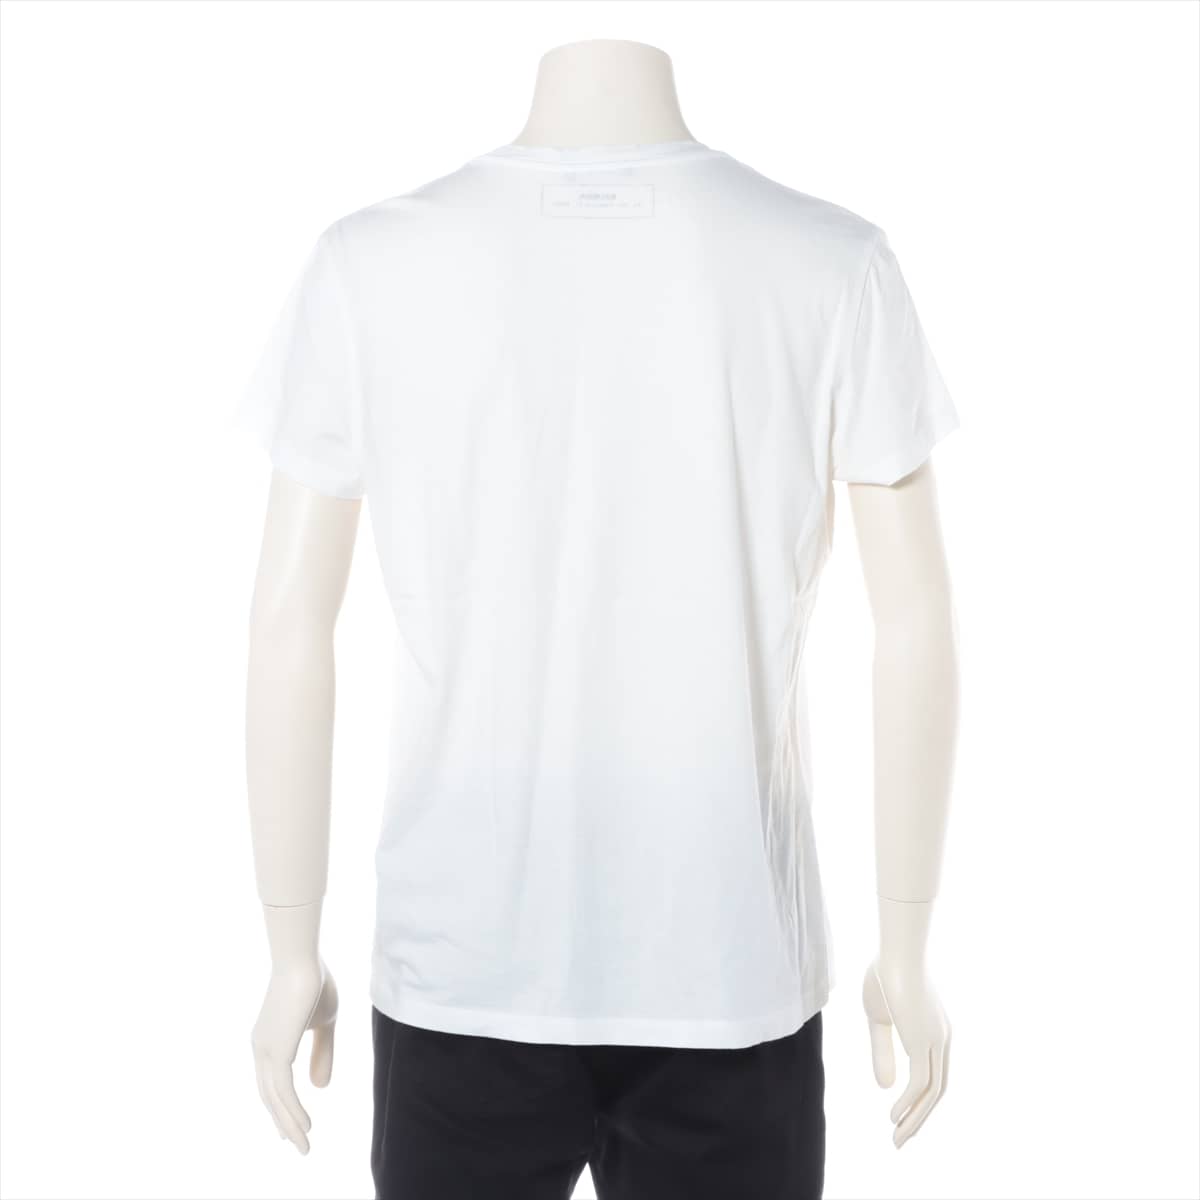 Balmain Cotton T-shirt M Men's White